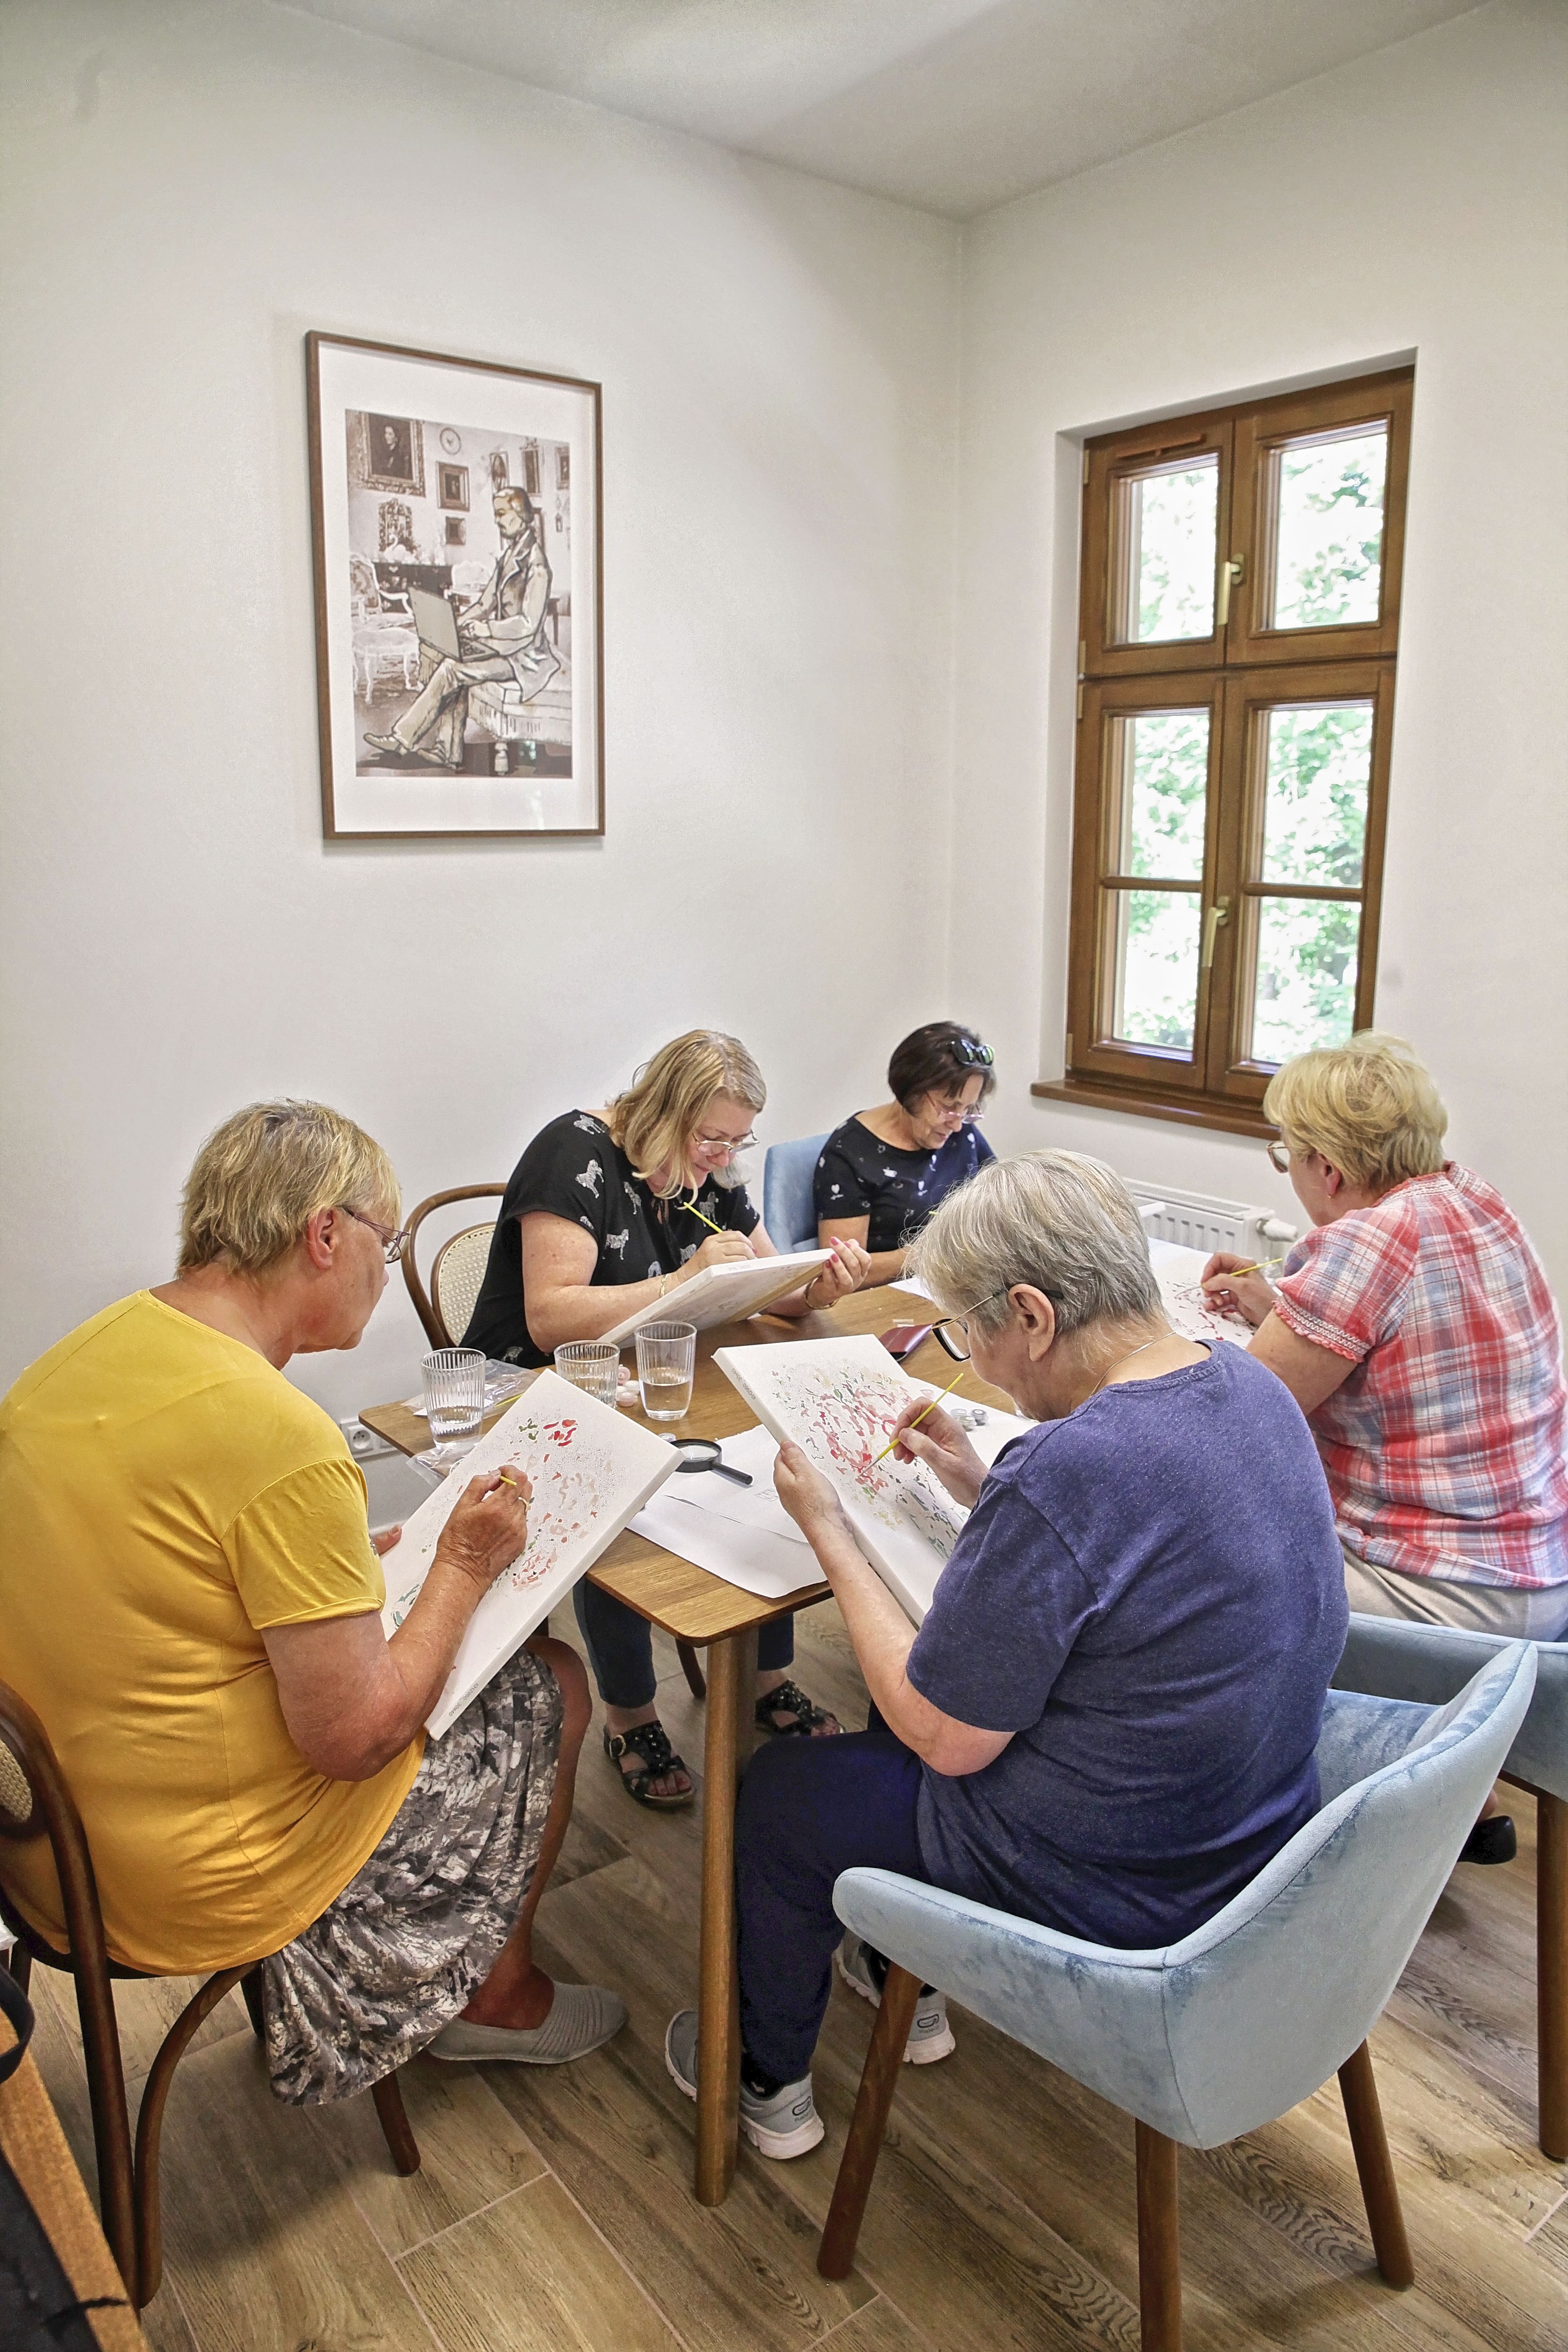 uczestnicy warsztatów wykonujący prace plastyczne, siedzący przy wspólnym stoliku